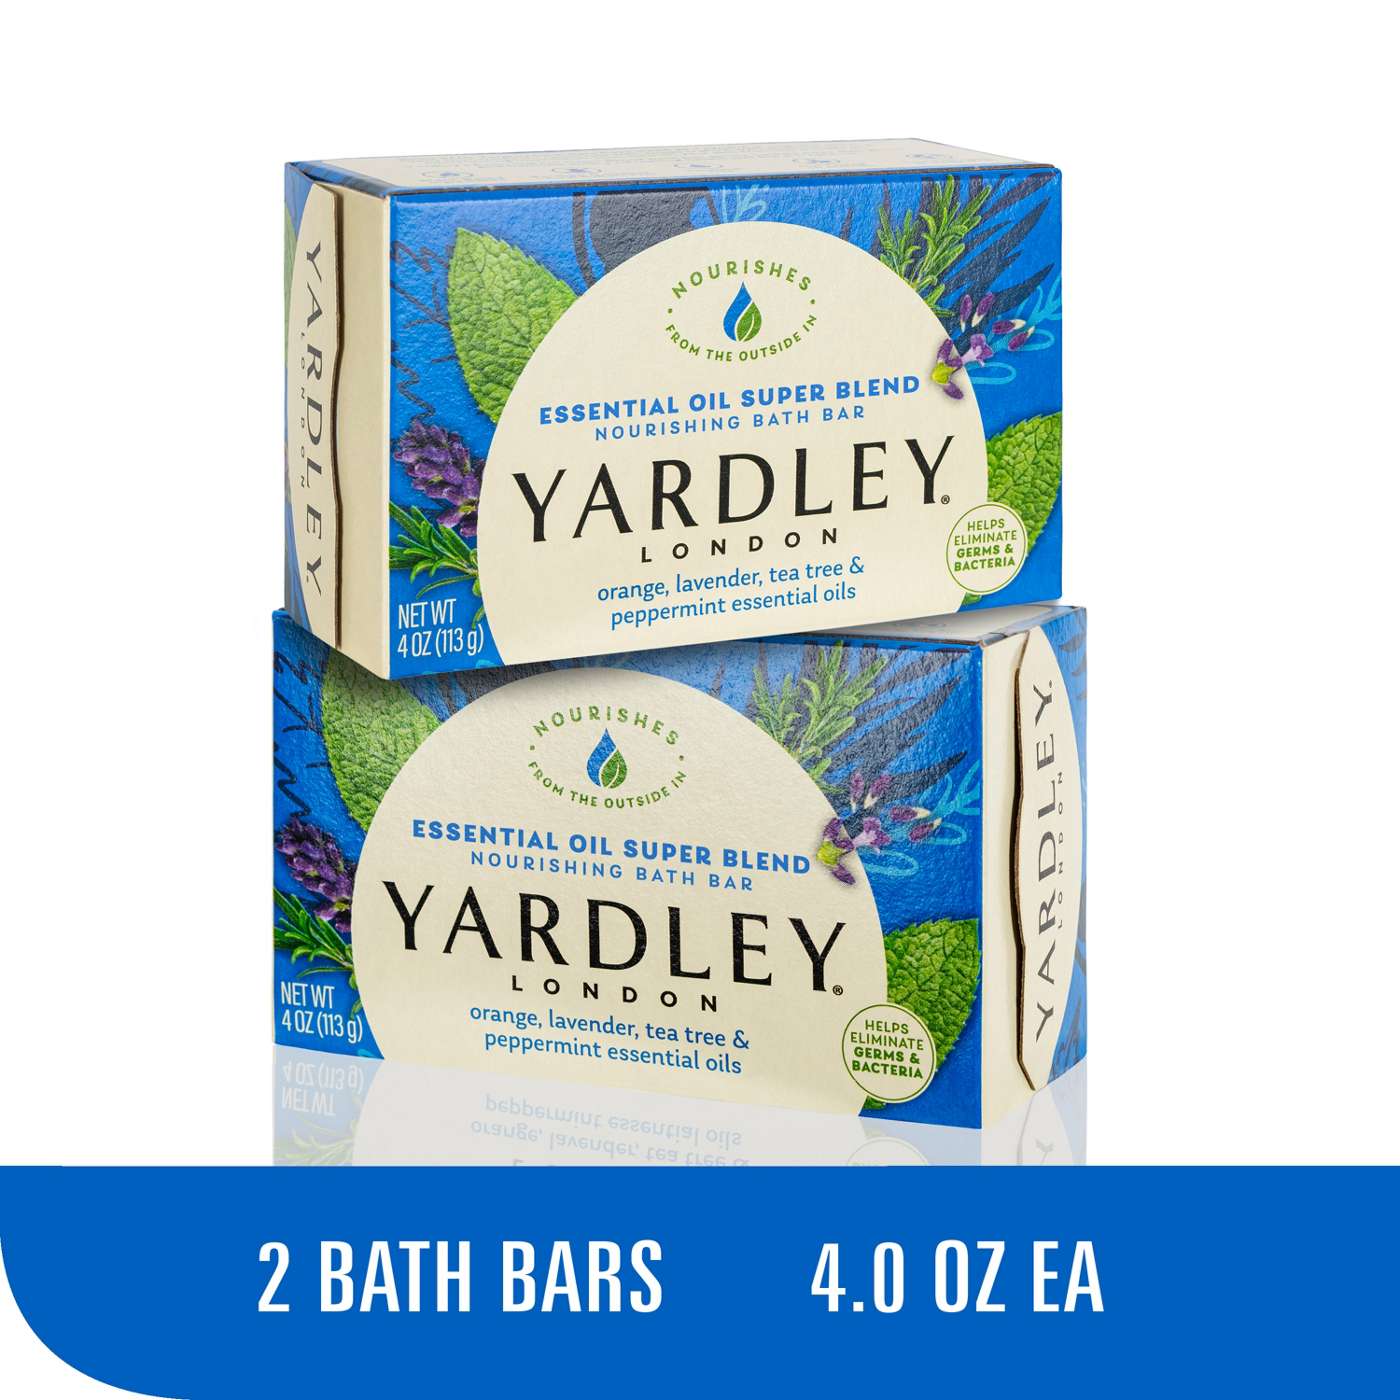 Yardley London Essential Oil Super Blend Bath Bar; image 6 of 8